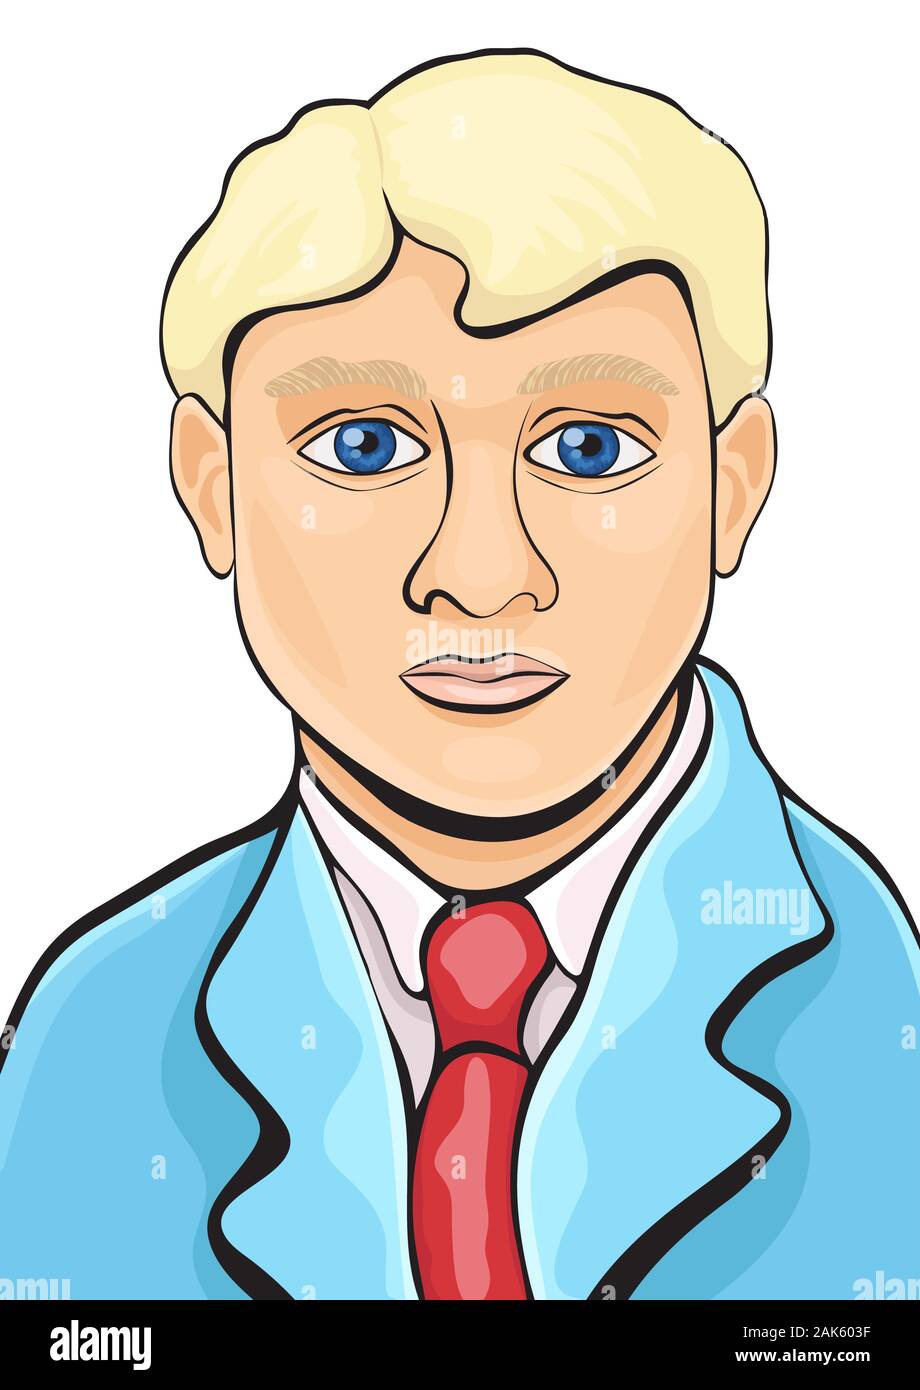 Portrait d'un homme peint à la main, dessin, caricature, photo  d'illustration vectorielle. Jeune homme blond avec de grands yeux bleus  dans un costume, une chemise avec une cravate rouge iso Image Vectorielle